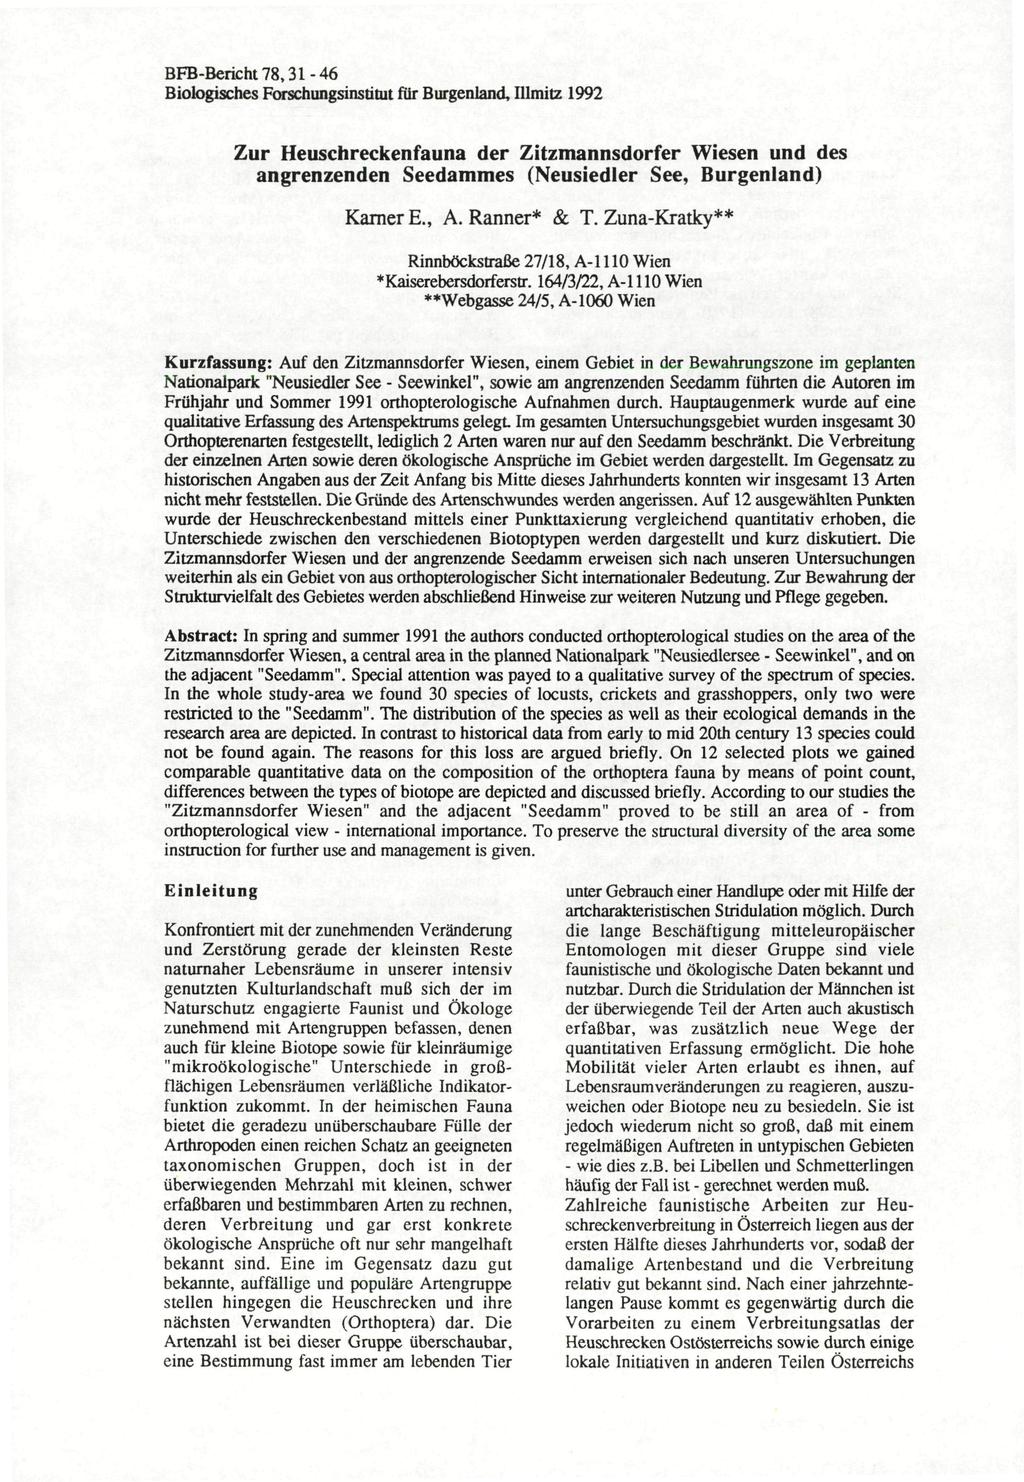 BFB-Bericht78,3-46 Biologisches Forschungsinstitut für Burgenland, Illmitz 99 Zur Heuschreckenfauna der Zitzmannsdorfer Wiesen und des angrenzenden Seedammes (Neusiedler See, Burgenland) Kamer E., A.